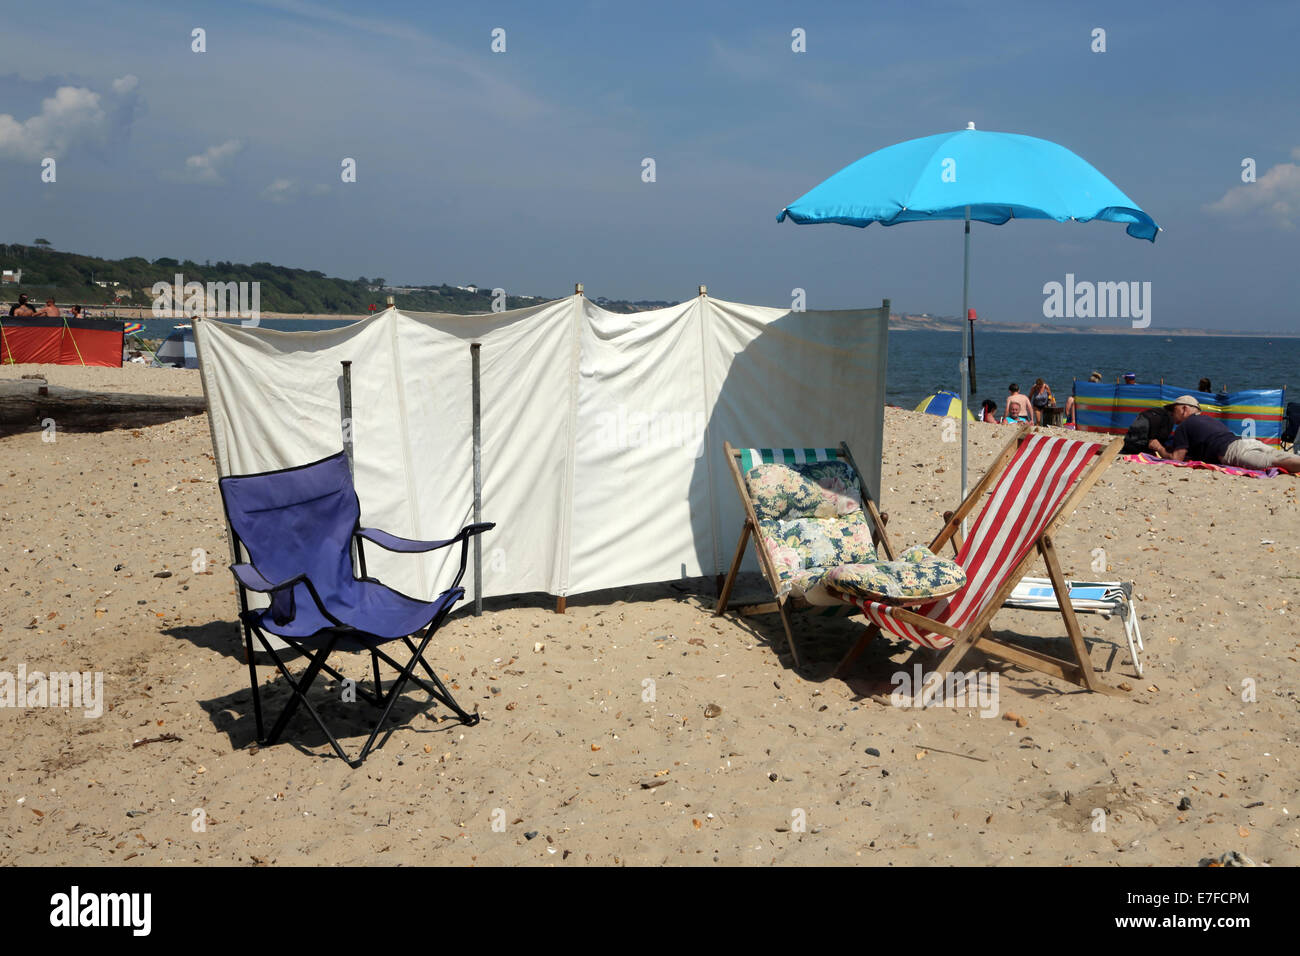 Einsamer Strand mit Sonnenschirm - ein lizenzfreies Stock Foto von Photocase